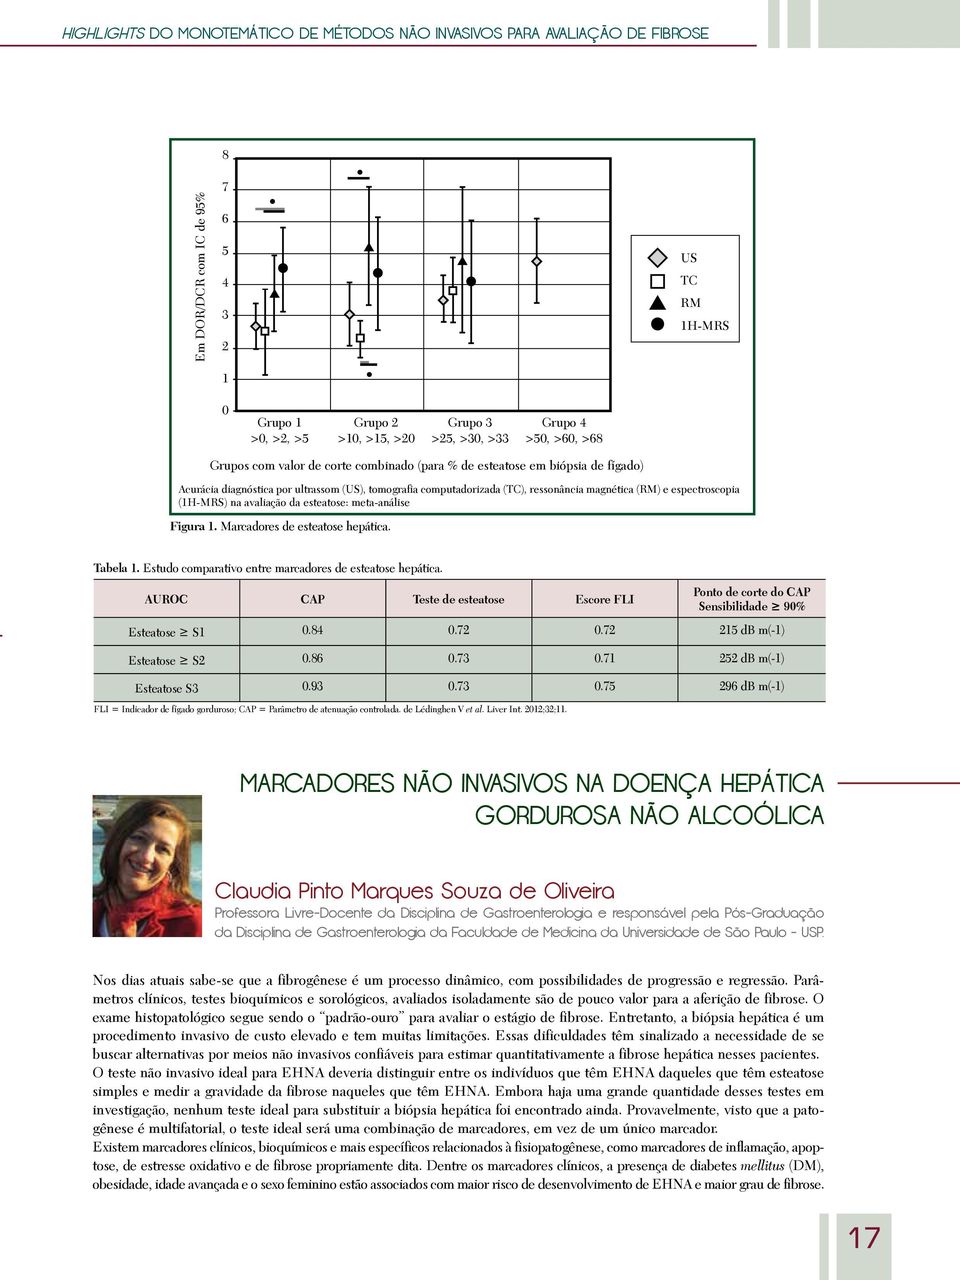 (RM) e espectroscopia (1H-MRS) na avaliação da esteatose: meta-análise Figura 1. Marcadores de esteatose hepática. Tabela 1. Estudo comparativo entre marcadores de esteatose hepática.